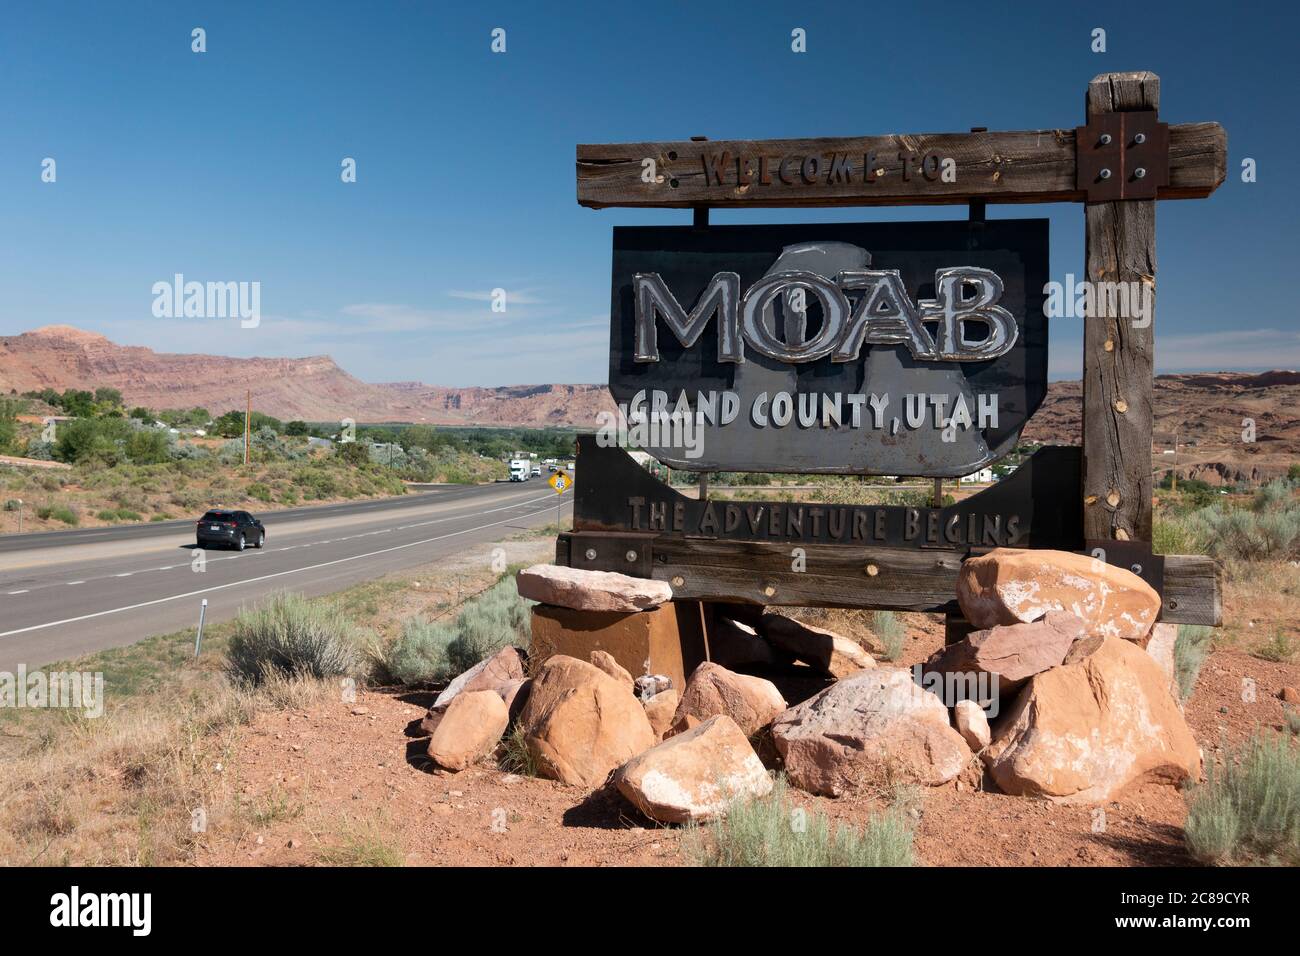 Panneau de bienvenue officiel de l'autoroute pour la ville de Moab, Grand County, Utah Banque D'Images